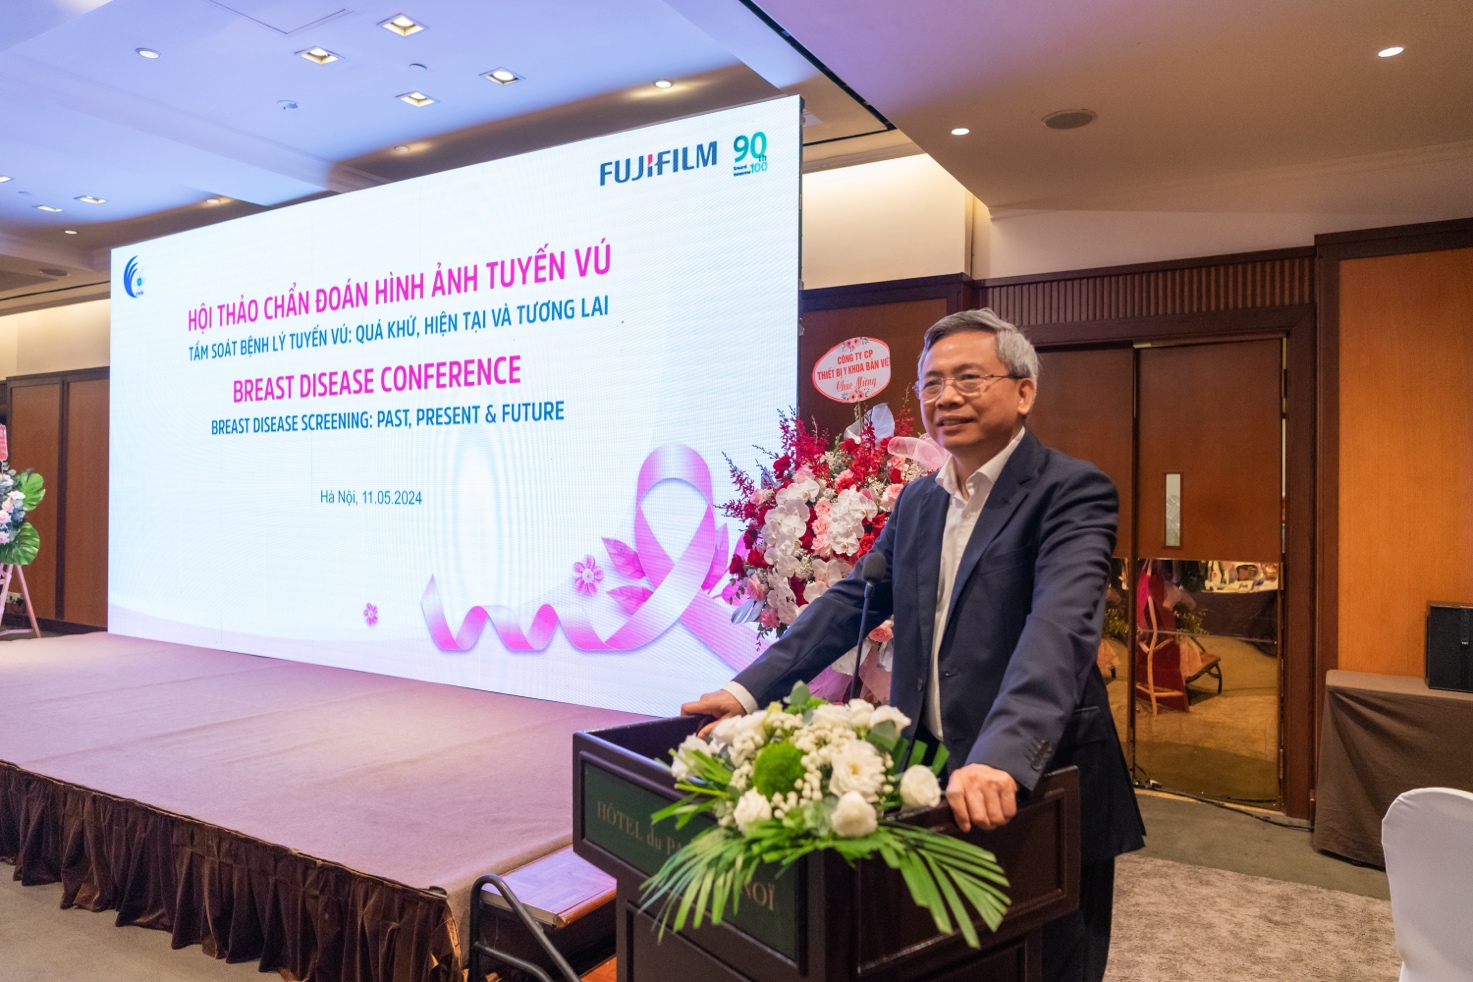 FUJIFILM Việt Nam kết hợp với các đối tác y khoa trong tầm soát, chẩn đoán và điều trị bệnh lý tuyến vú - 2